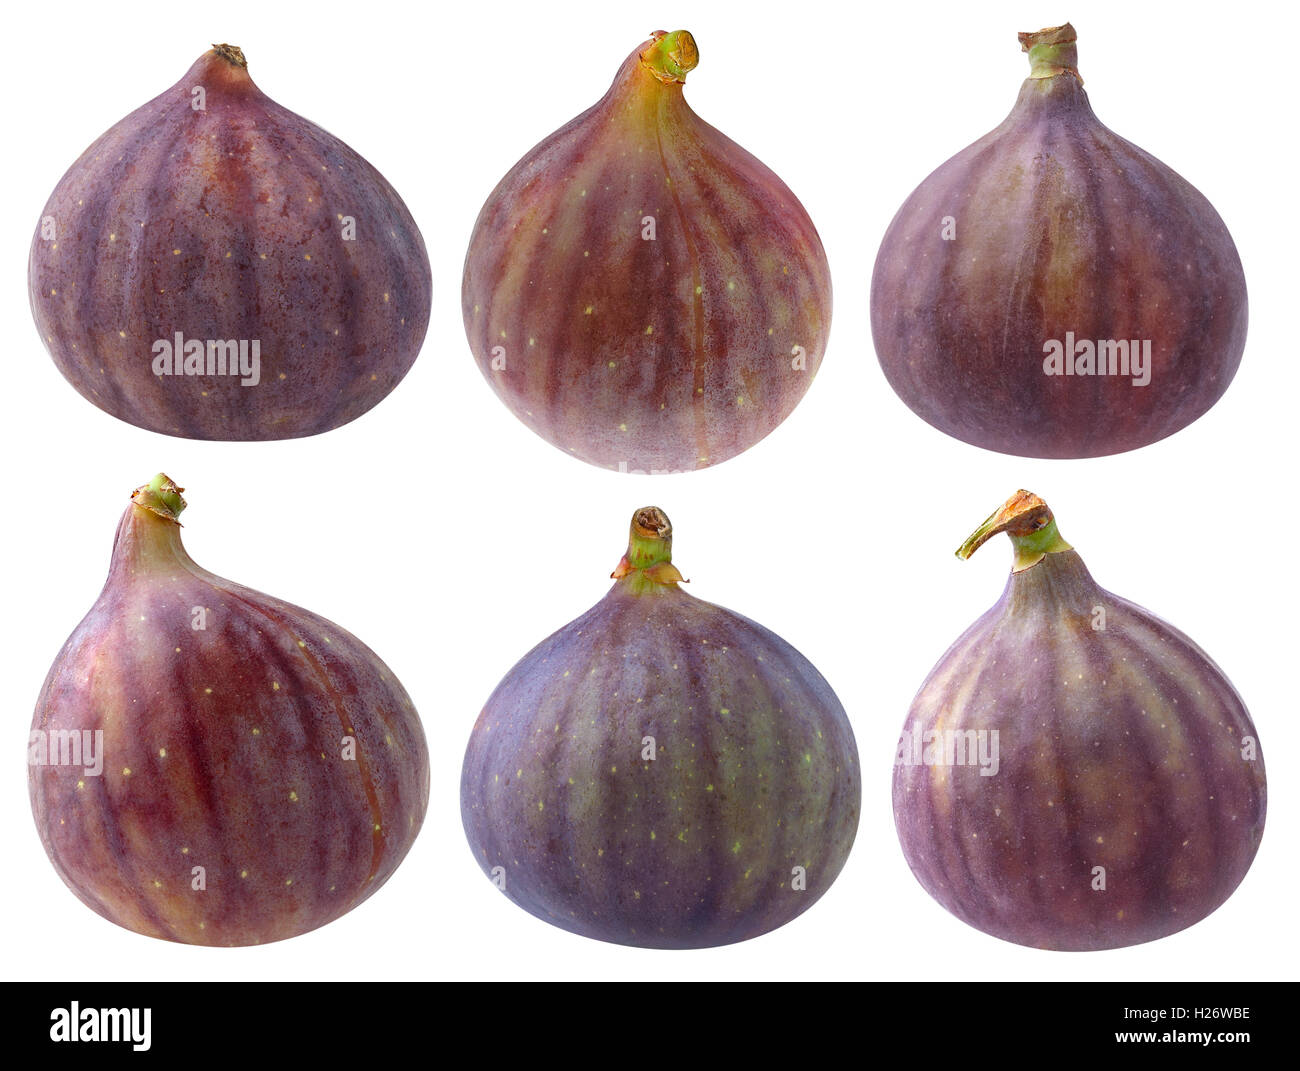 Isolate le figg. Raccolta di vari fig frutti isolati su sfondo bianco con tracciato di ritaglio Foto Stock